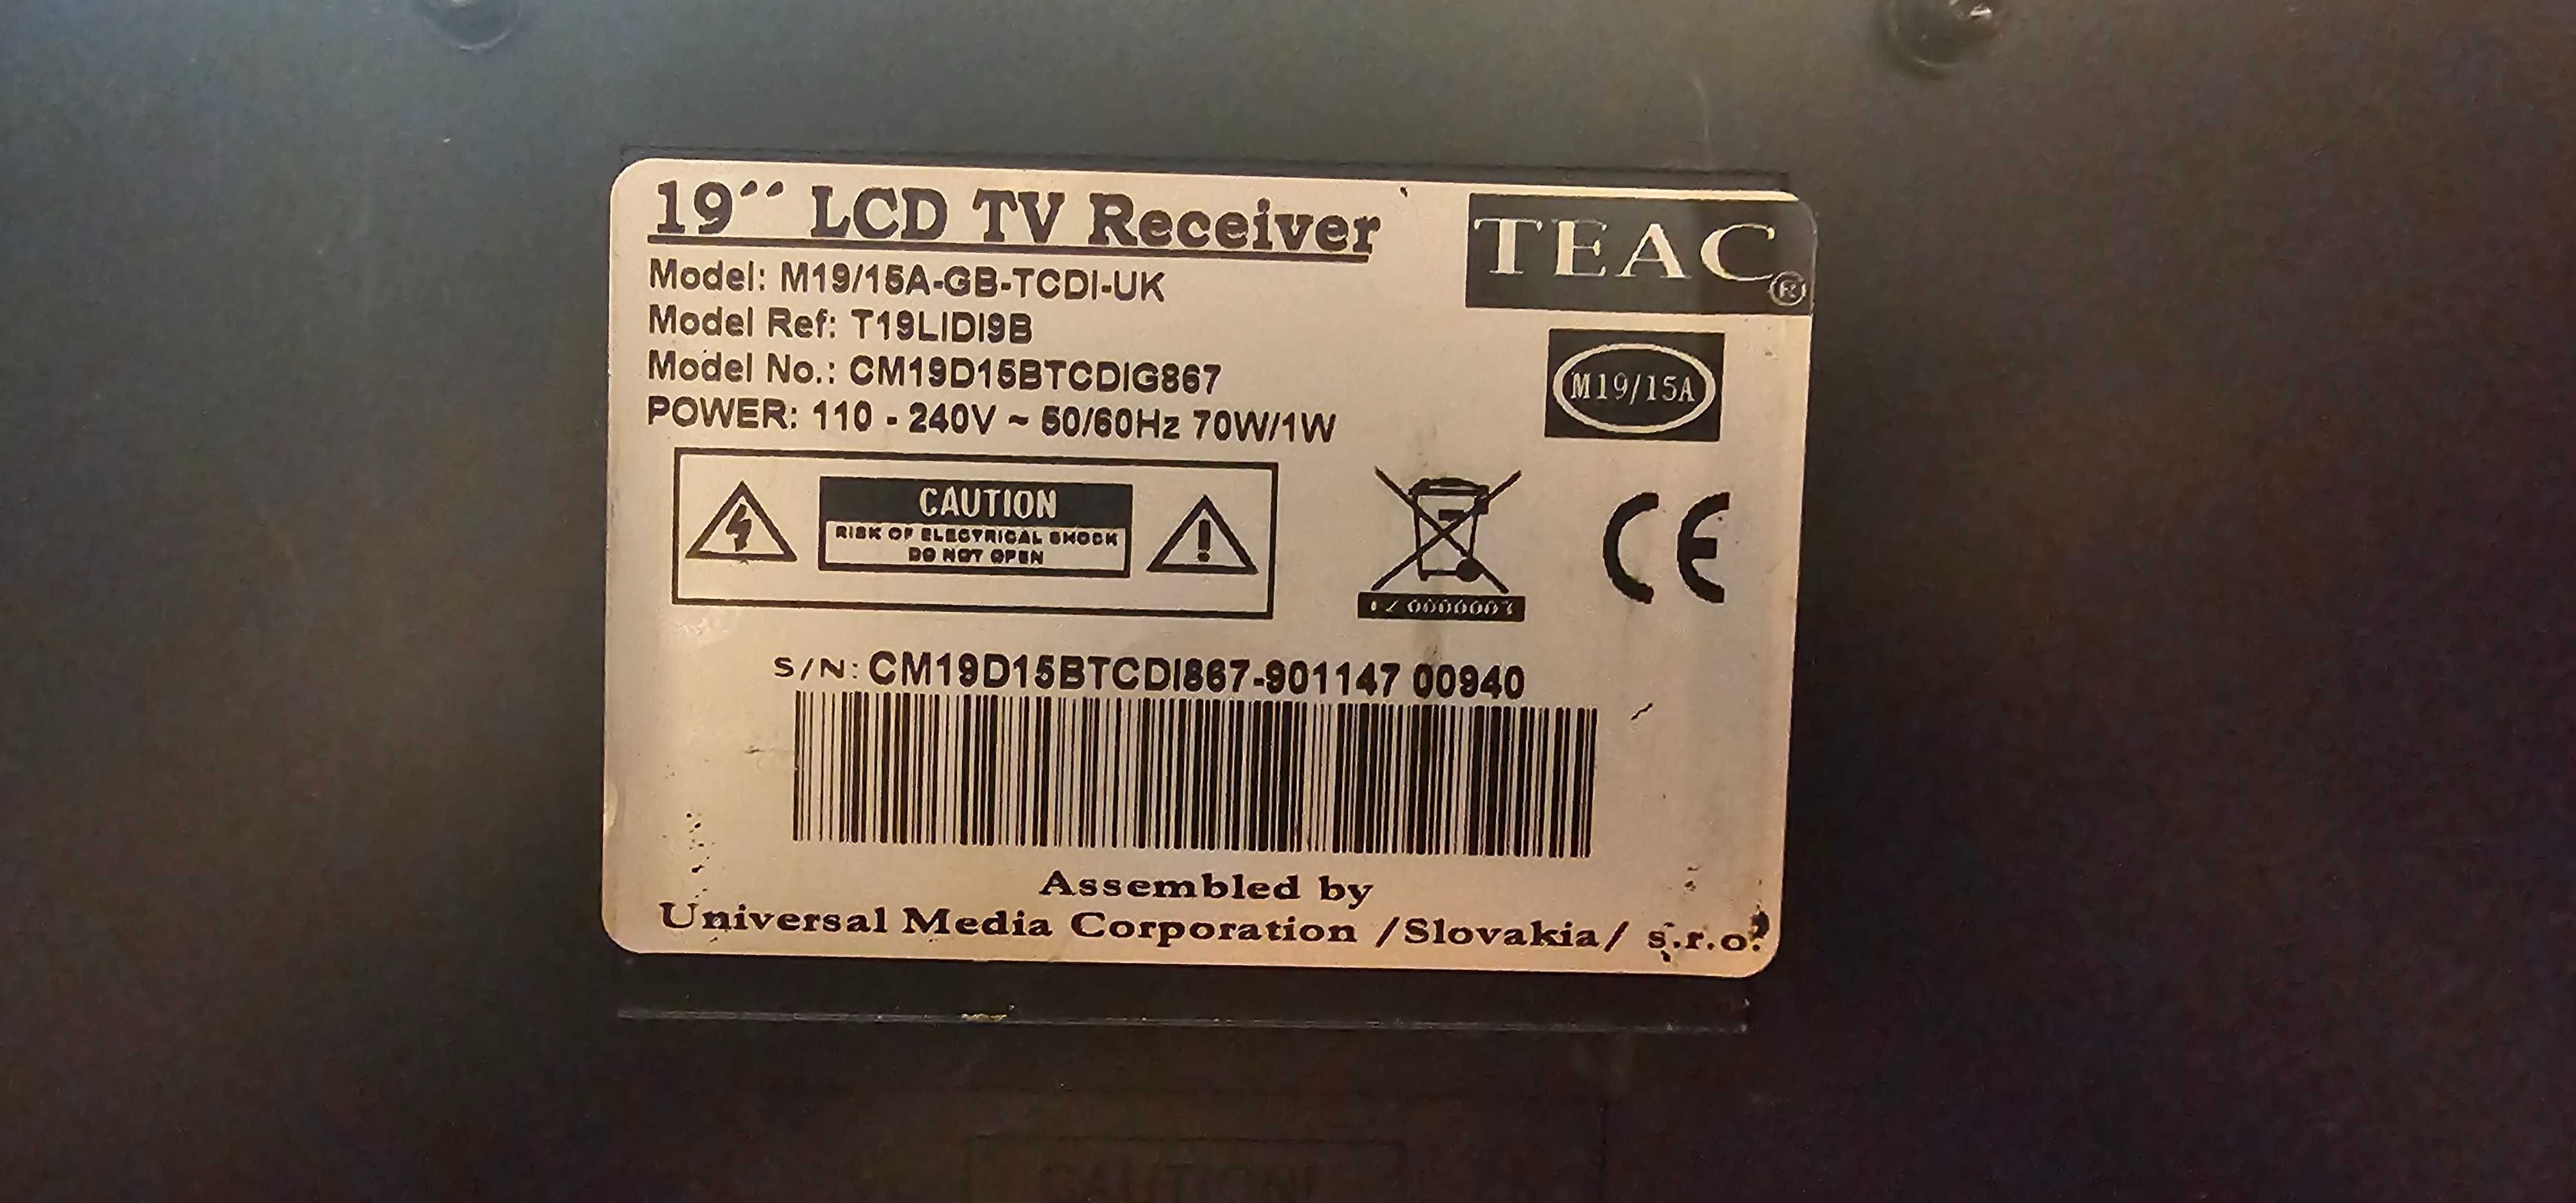 Tv TEAC M19/15A-GB-TCDI-UK Z Dvd i złączem na ipod